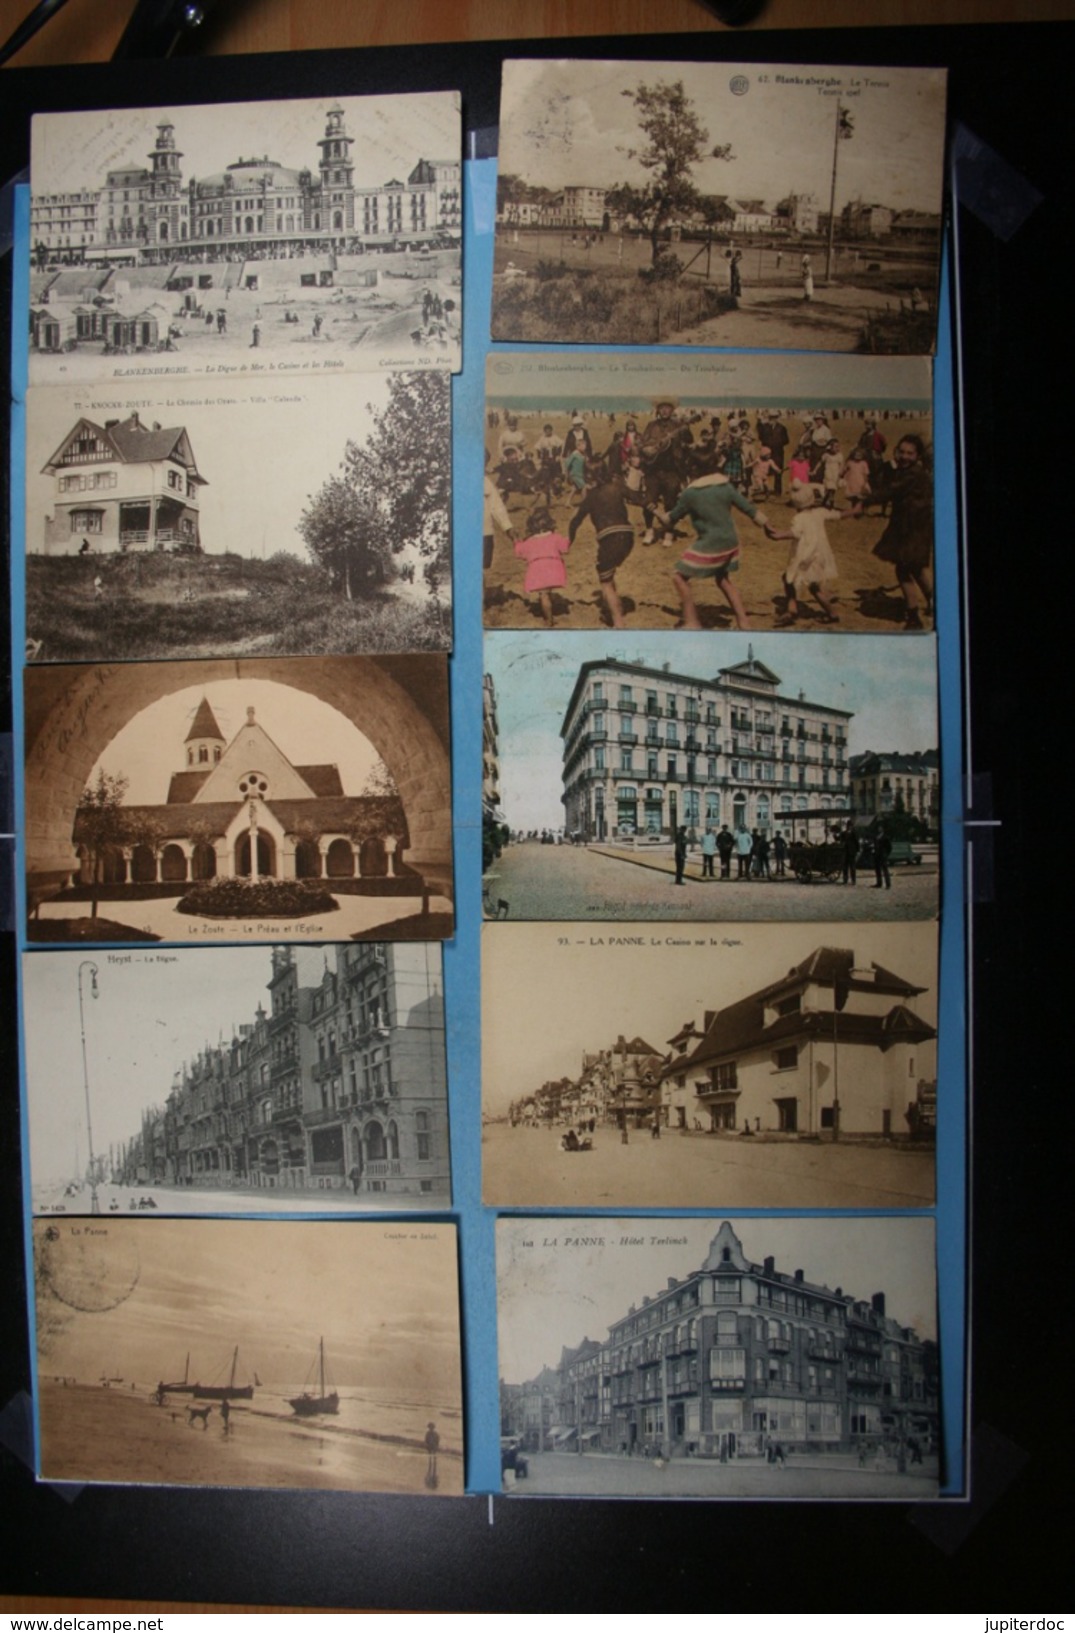 210 cartes postales de la Côte Kust  (toutes scannées) (6)